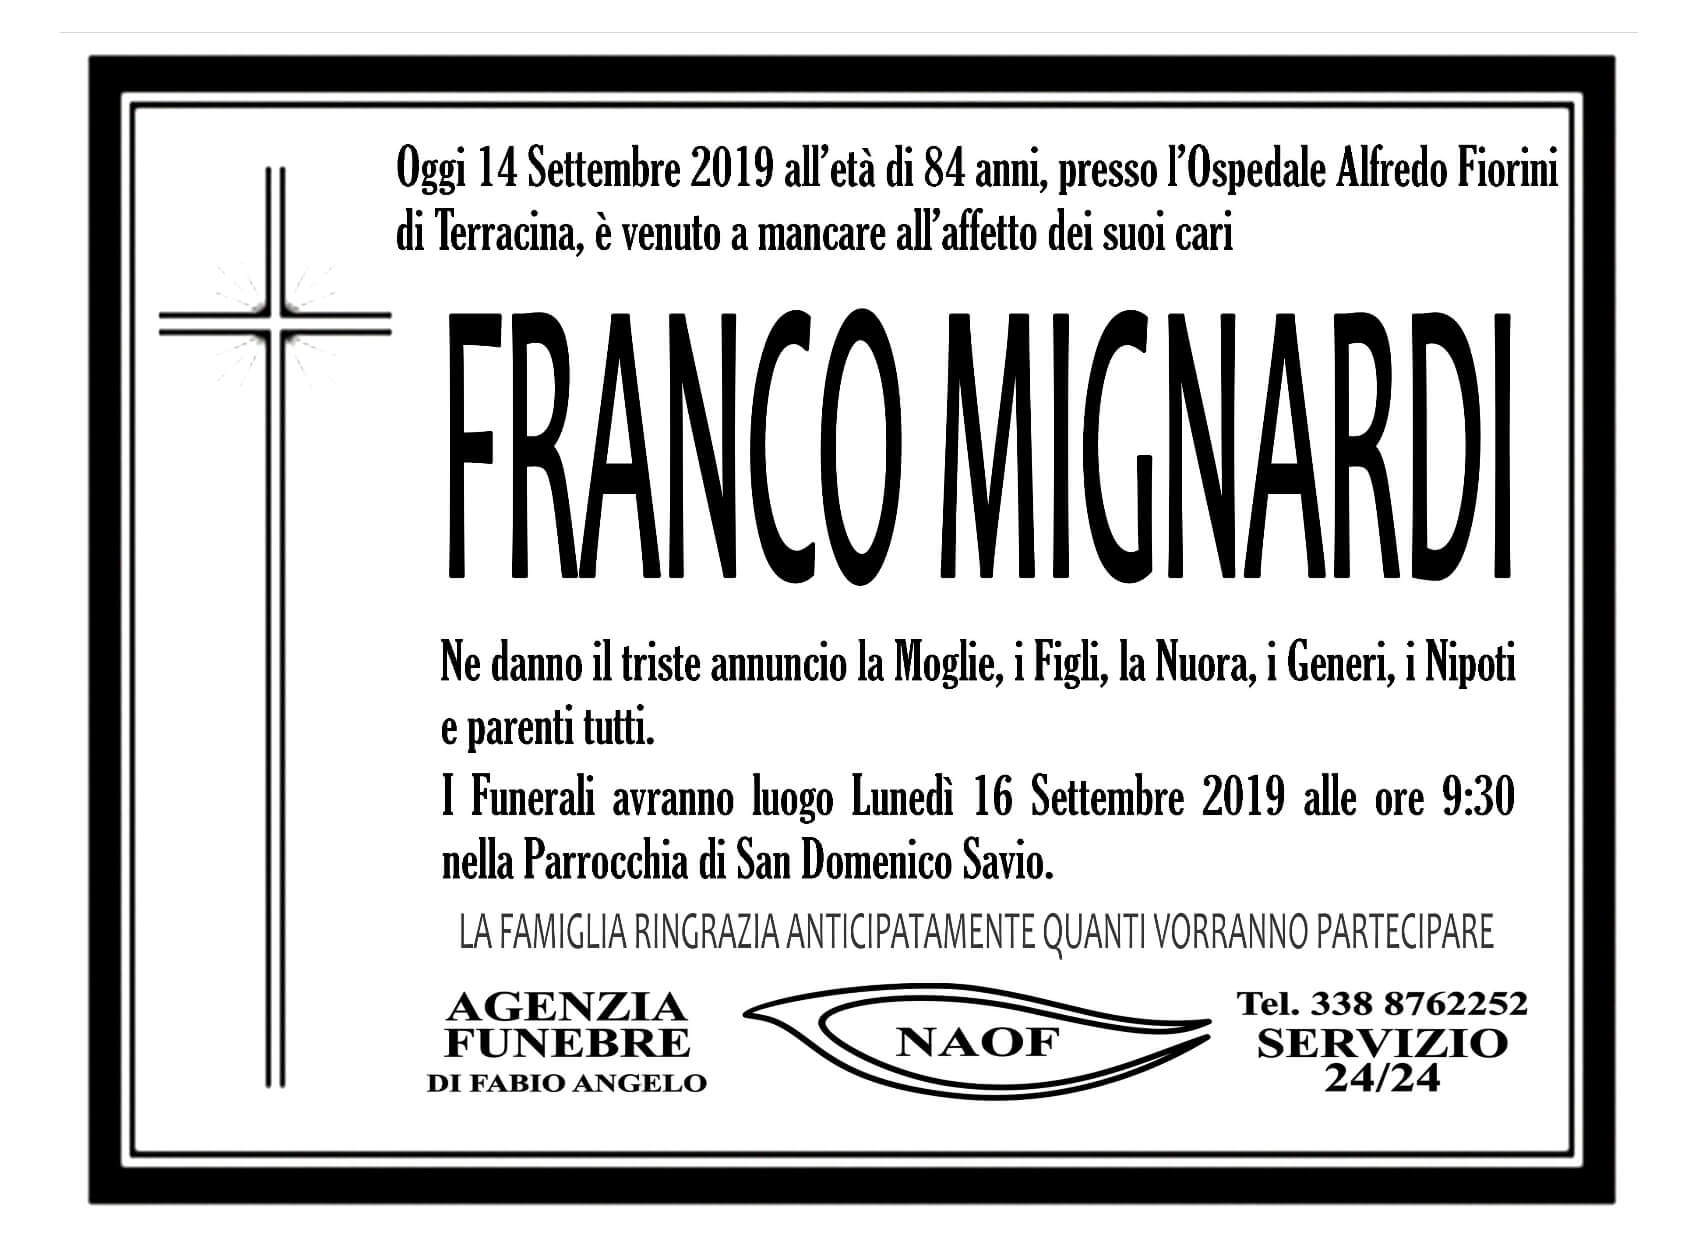 Franco Mignardi